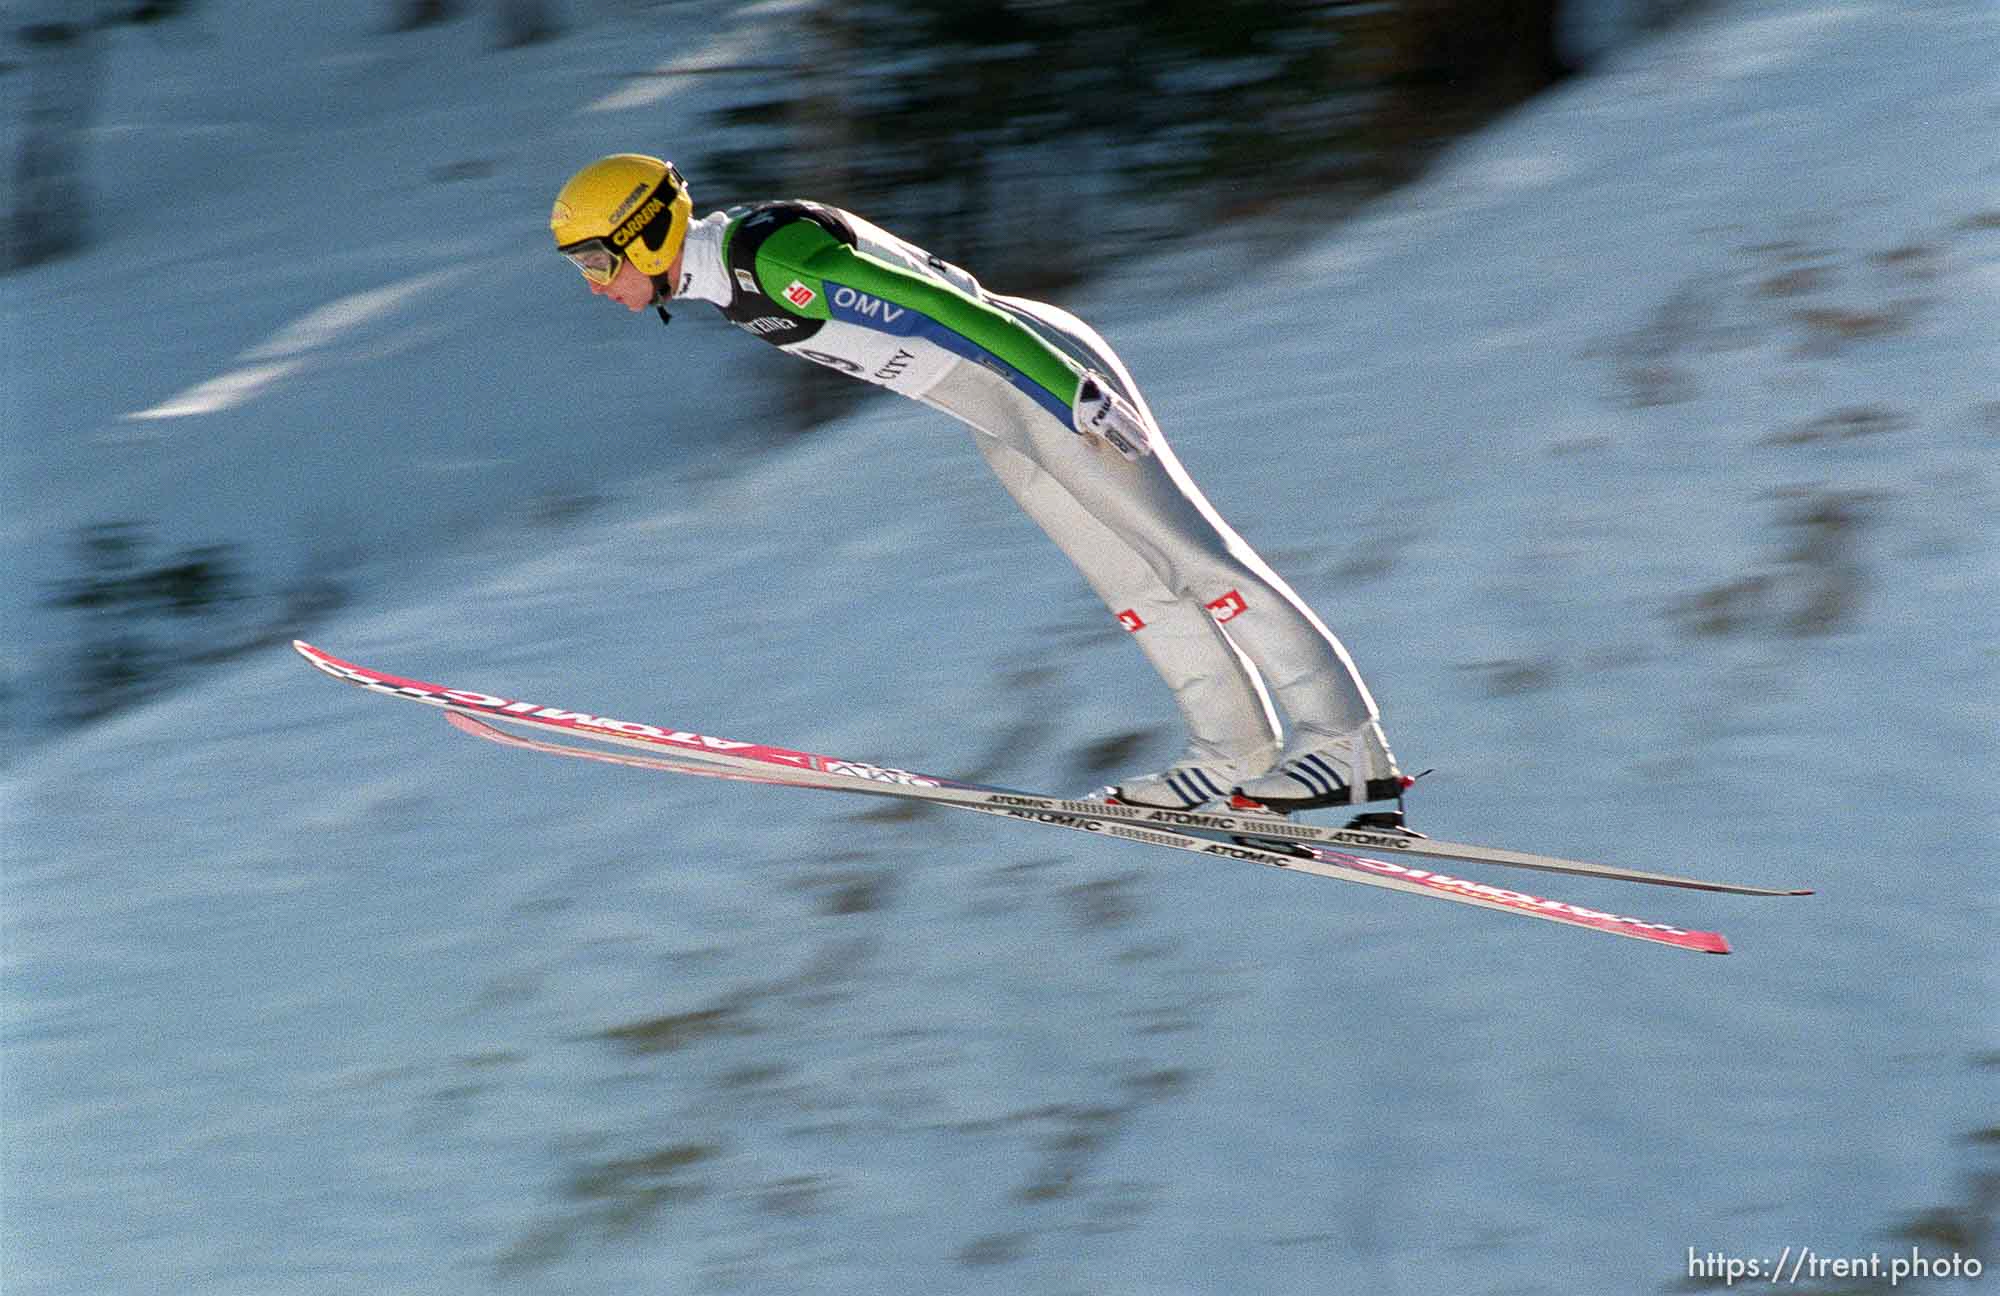 Course Record Ski Jump